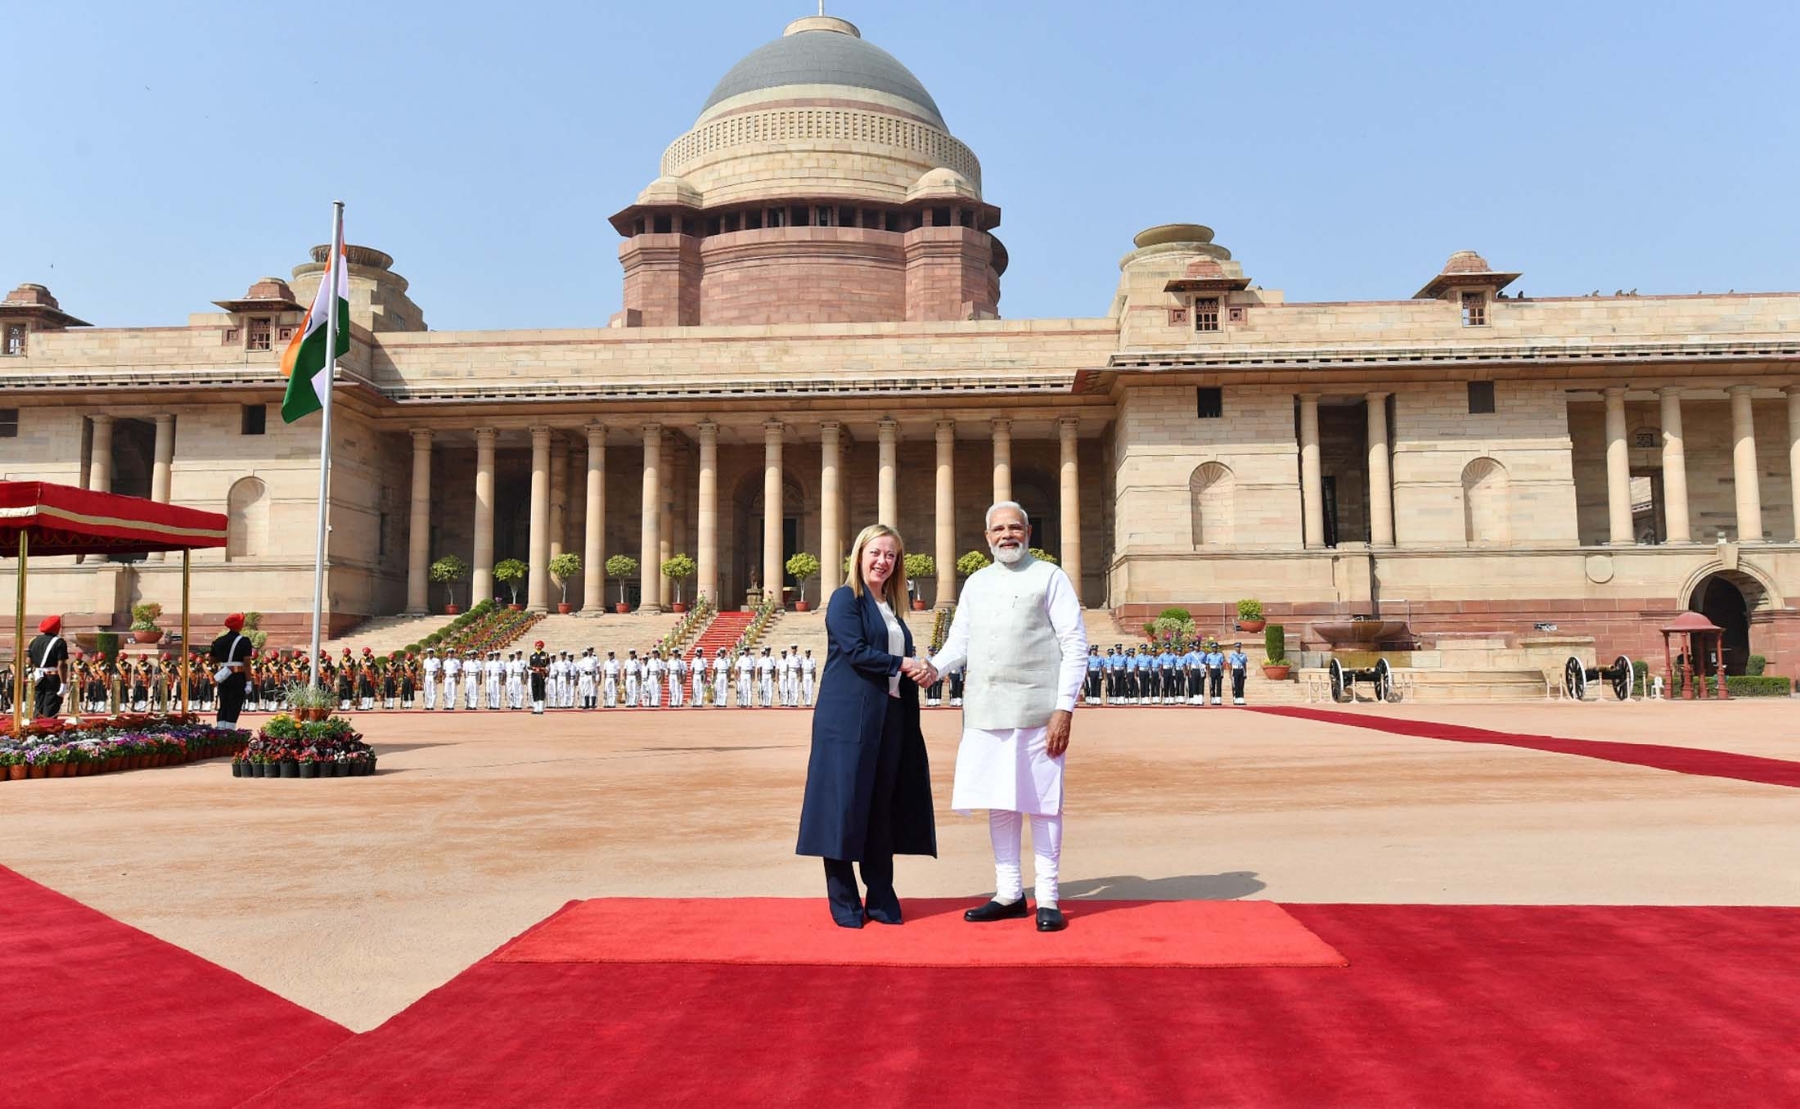 नई दिल्ली में गुरुवार 2 मार्च 2023 को राष्ट्रपति भवन में स्वागत समारोह के दौरान प्रधानमंत्री नरेंद्र मोदी  और इटली की प्रधानमंत्री जियोर्जिया मेलोनी। हिन्दुस्थान समाचार/ फोटो गणेश बिष्ट